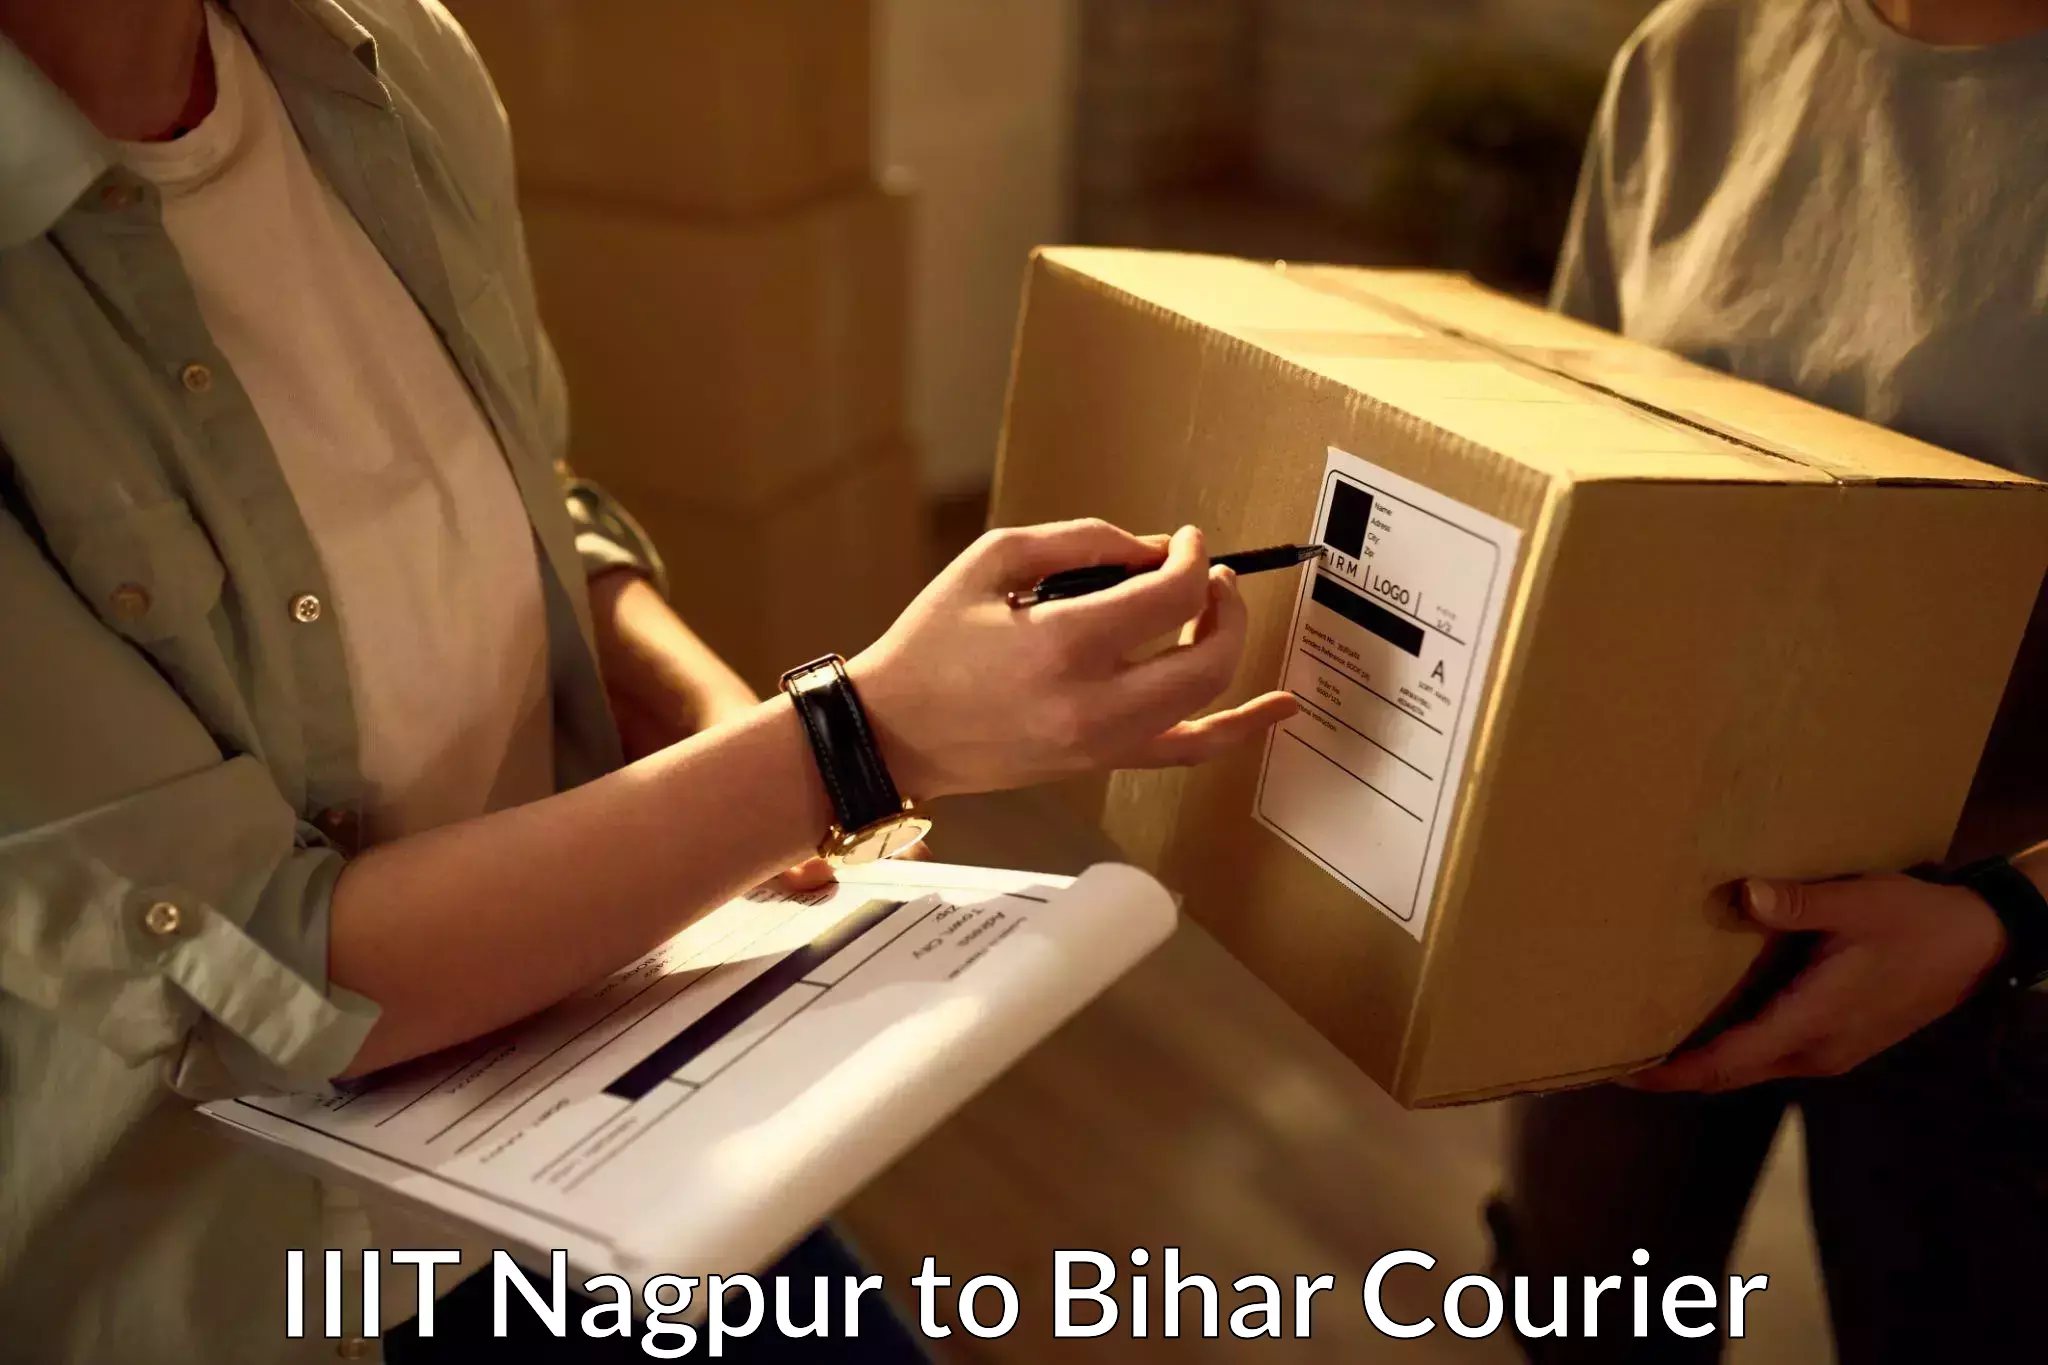 Efficient parcel service IIIT Nagpur to Bihar